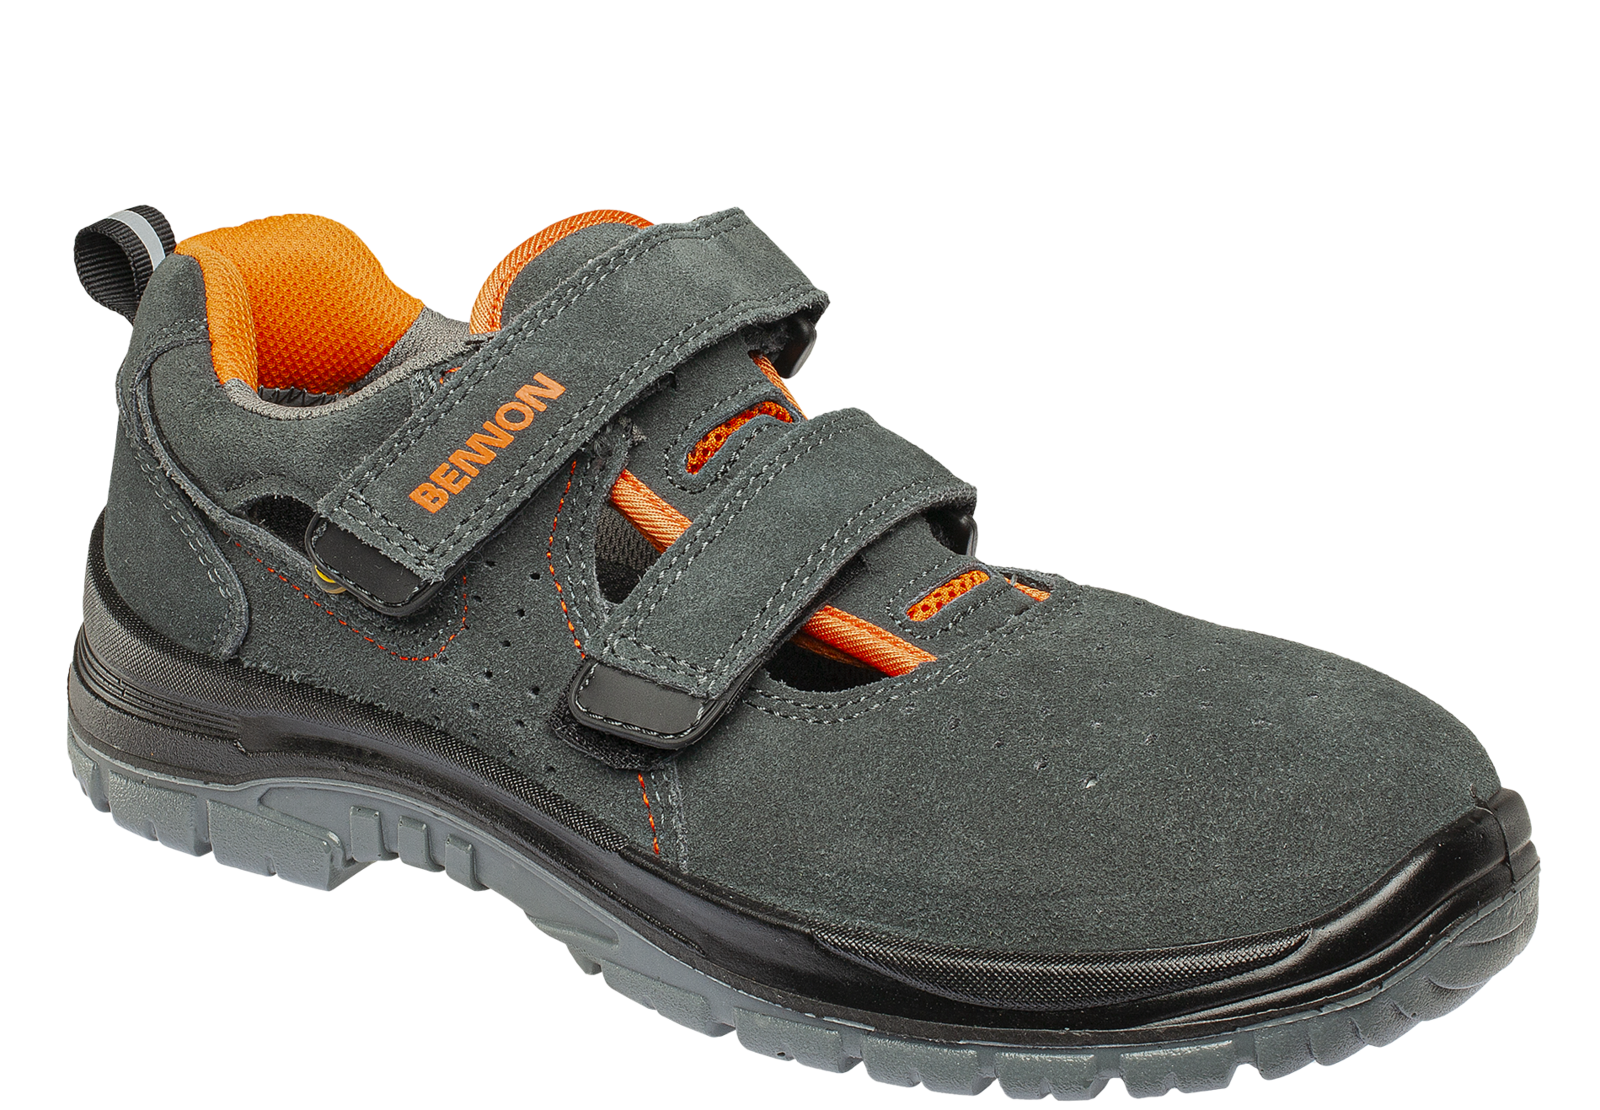 Bezpečnostné sandále Bennon Tobler S1 ESD - veľkosť: 43, farba: sivá/oranžová